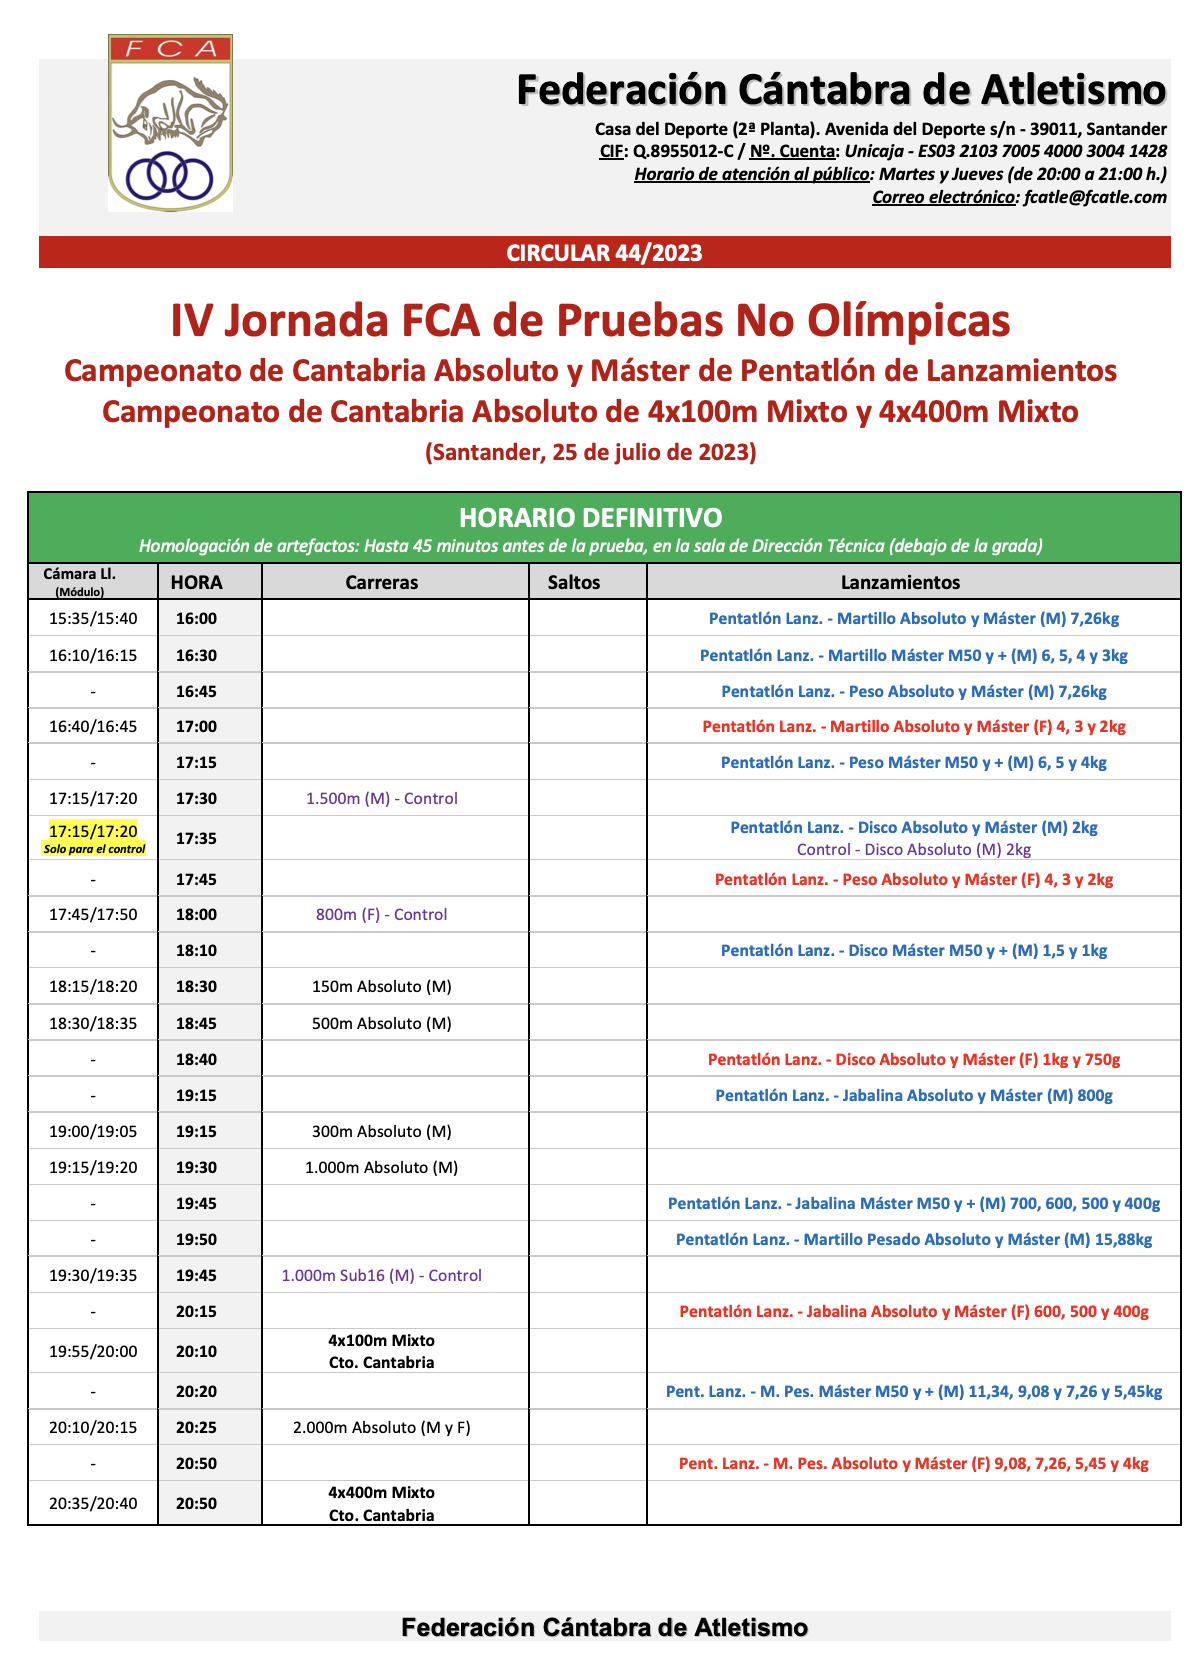 IV Jornada FCA de Pruebas No Olímpicas / Campeonato de Cantabria Absoluto de Pentatlón de Lanzamientos y Relevos Mixtos @ Santander, Cantabria